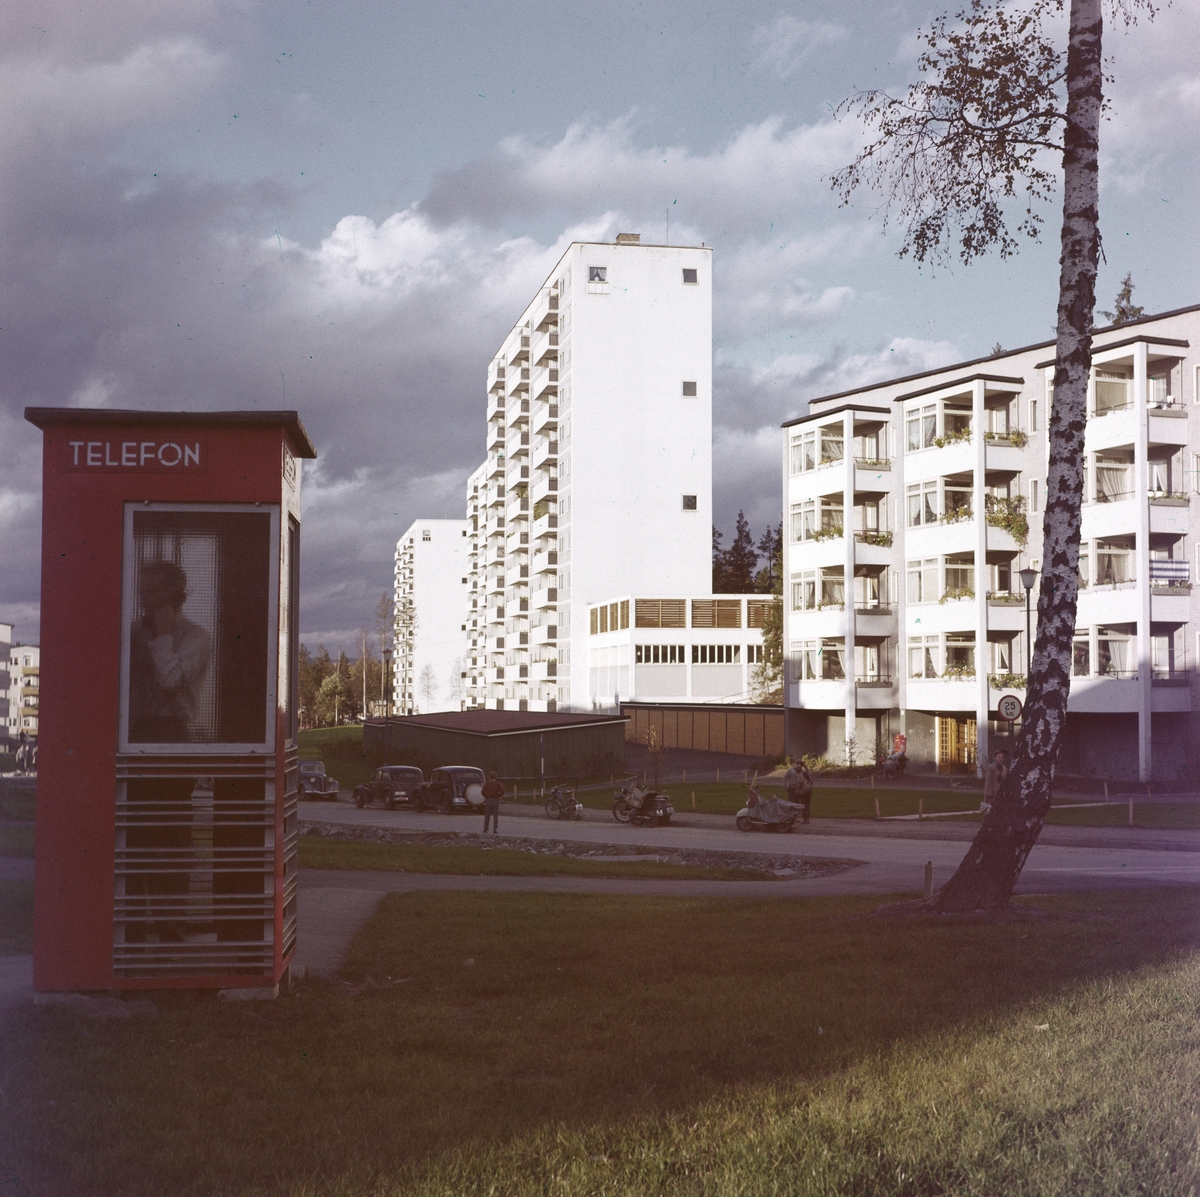 Drabantbyen Bøler med blokkbebyggelse fotografert i oktober 1958. En person snakker i telefonen i en rød telefonkiosk.